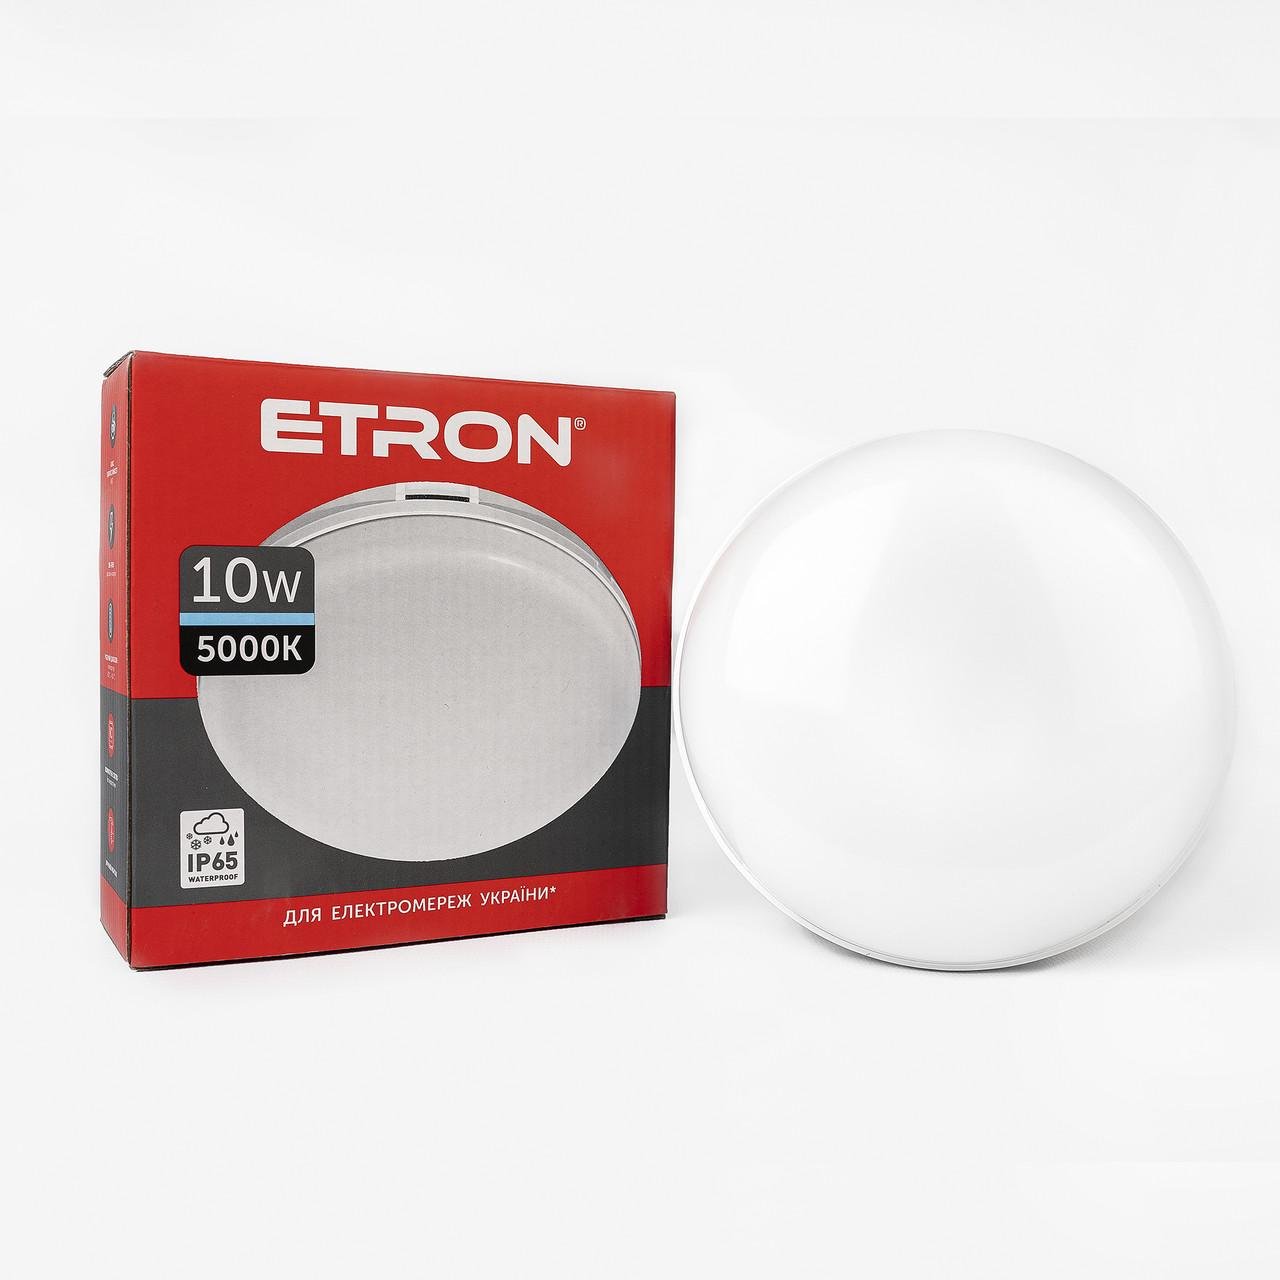 Світильник світлодіодний ETRON Communal 1-ESP-502-C 10 W 5000 K circle